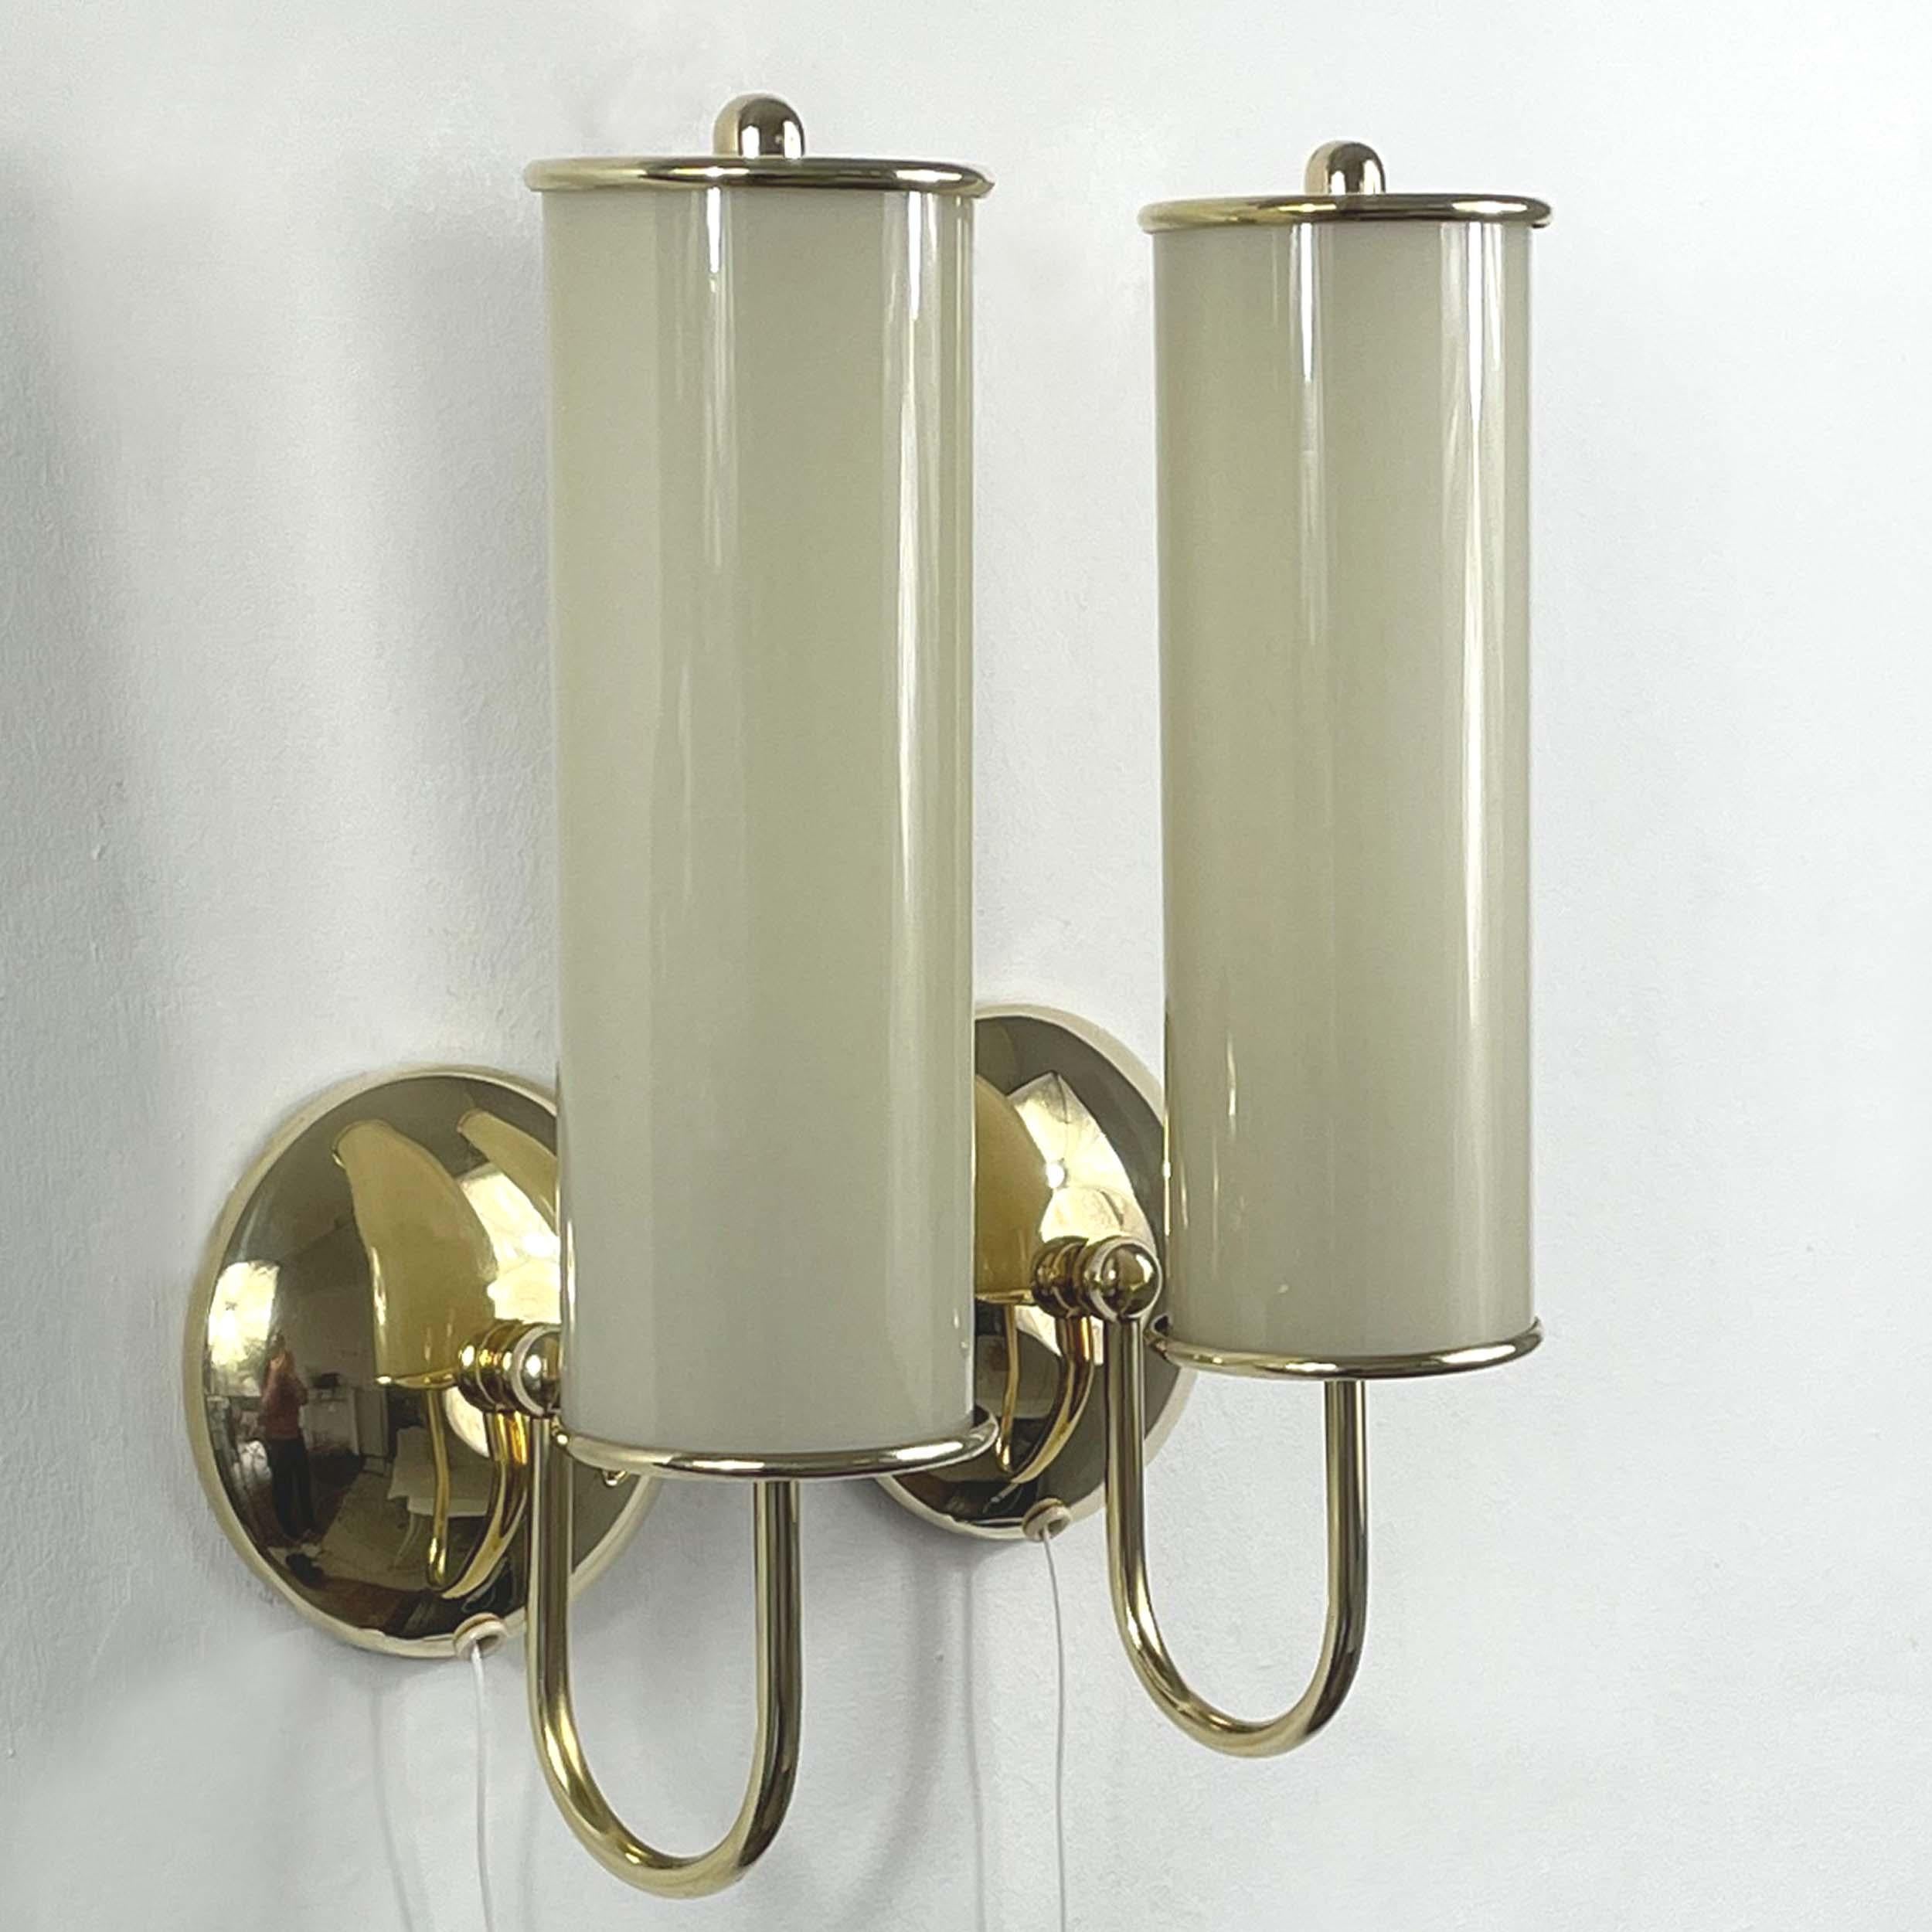 Art Deco Tubular Opaline Glass & Brass Sconces, Germany 1930s For Sale 4